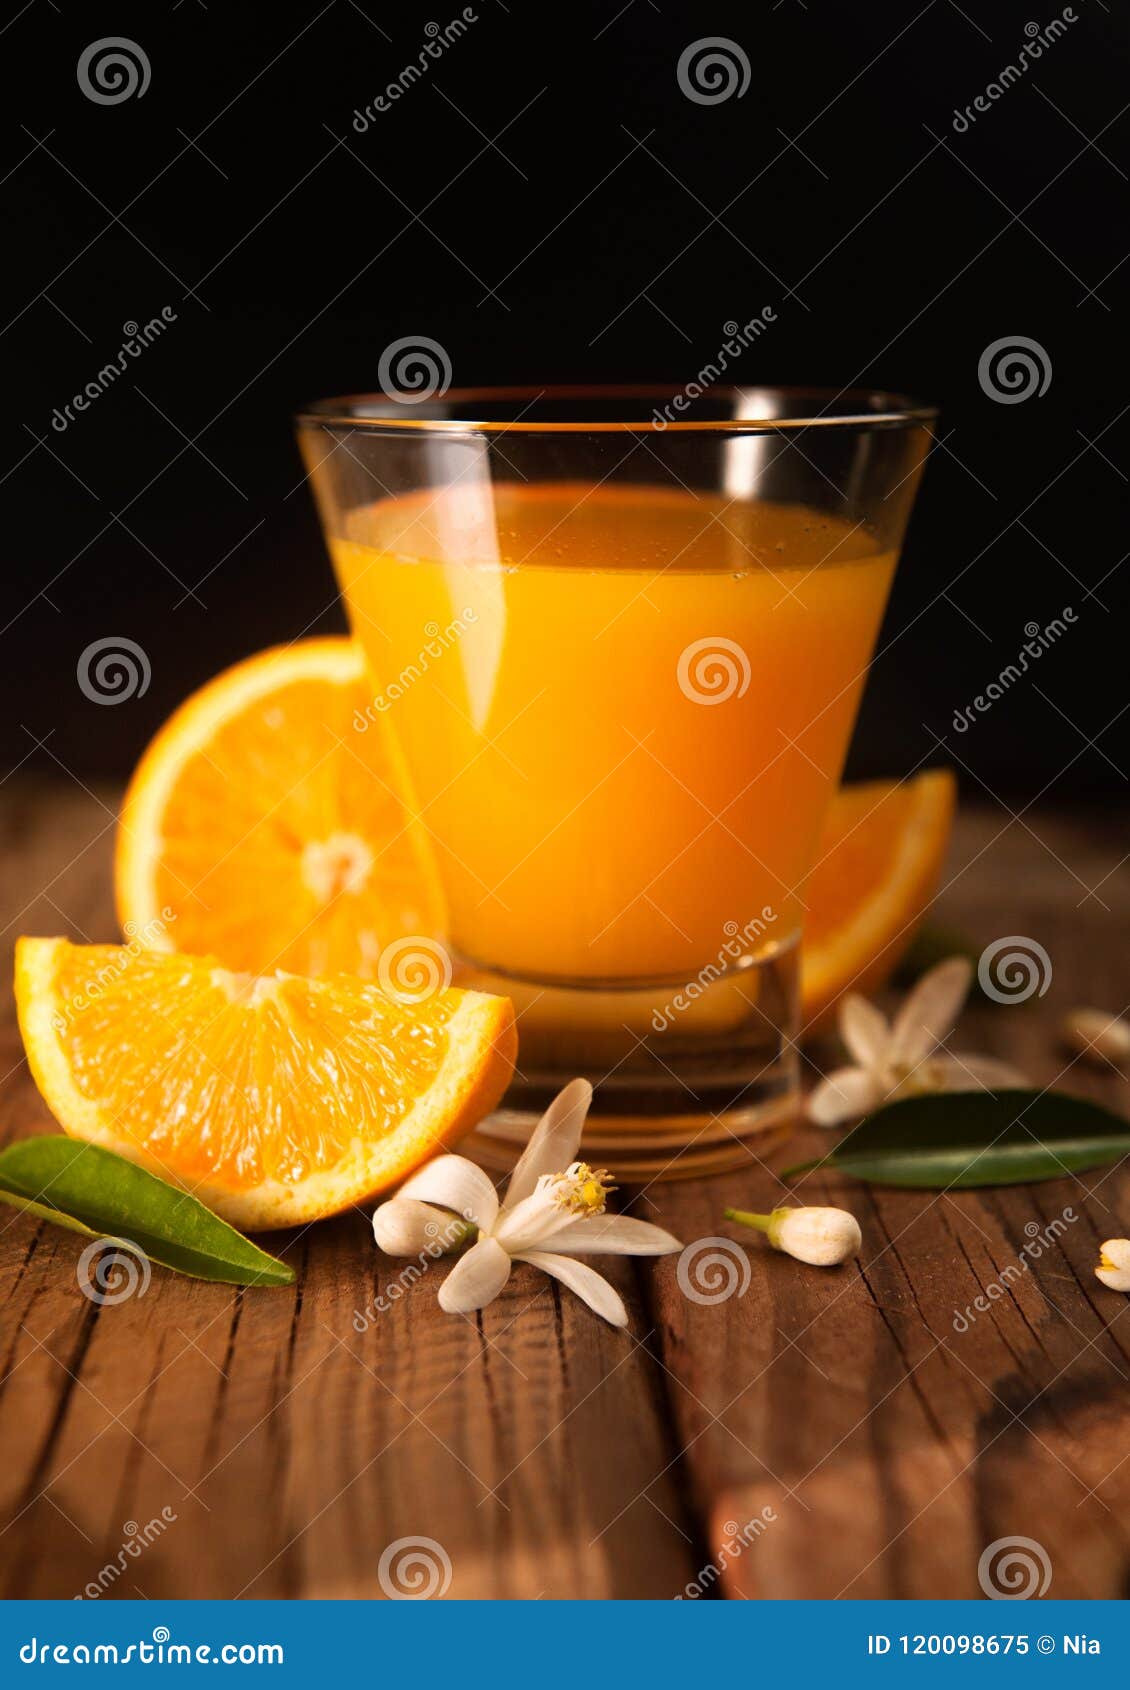 Orange, Orange Juice on Rustic Wood Background Stock Image - Image of ...